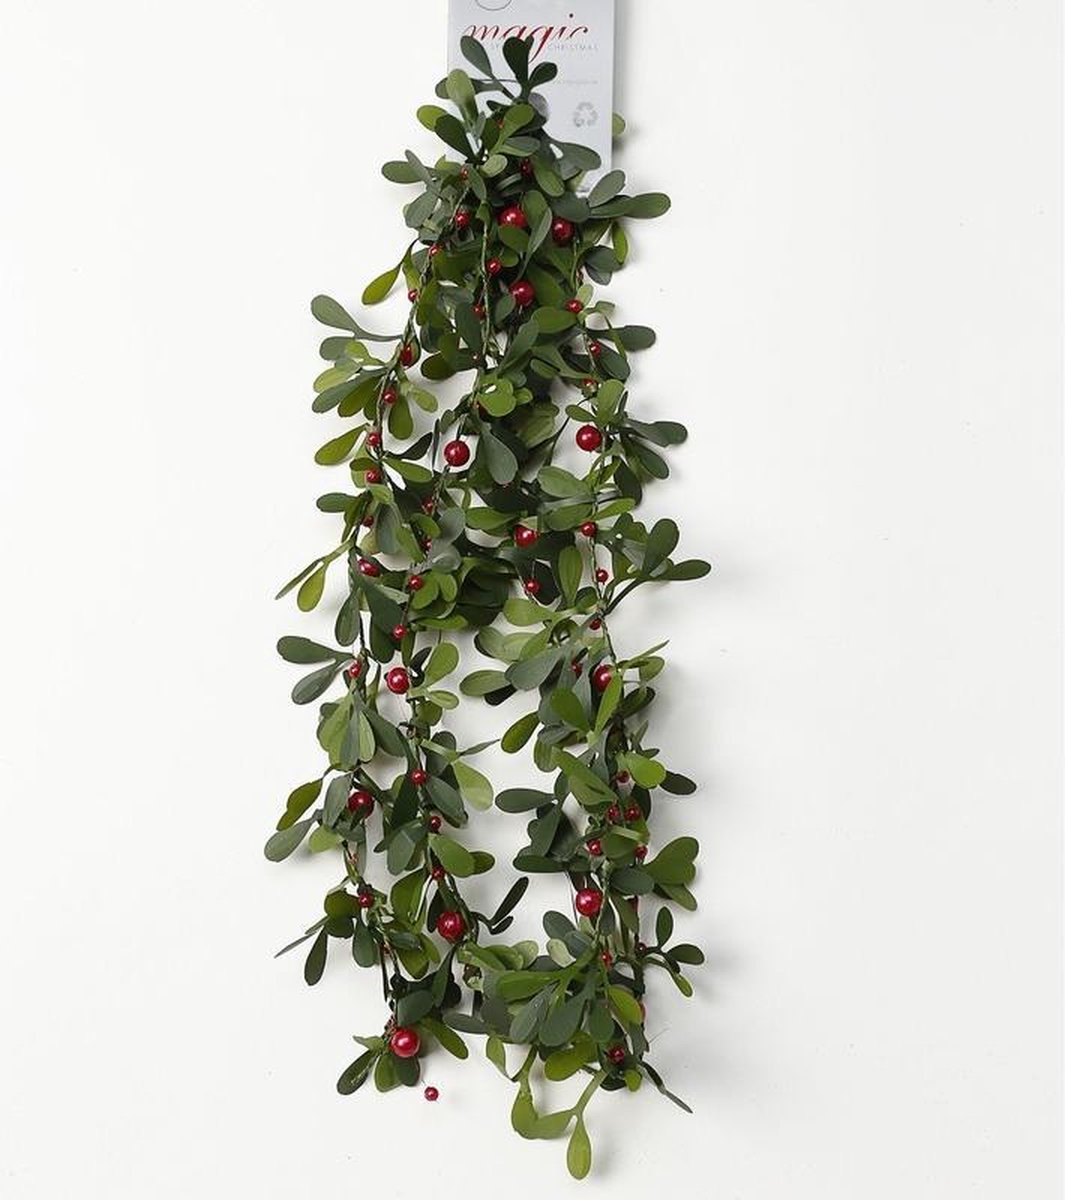 Groene kerst slingers/guirlandes met besjes 150 cm - Kerst decoratie slinger/guirlande met rode bessen 1,5 meter - Christmas wood